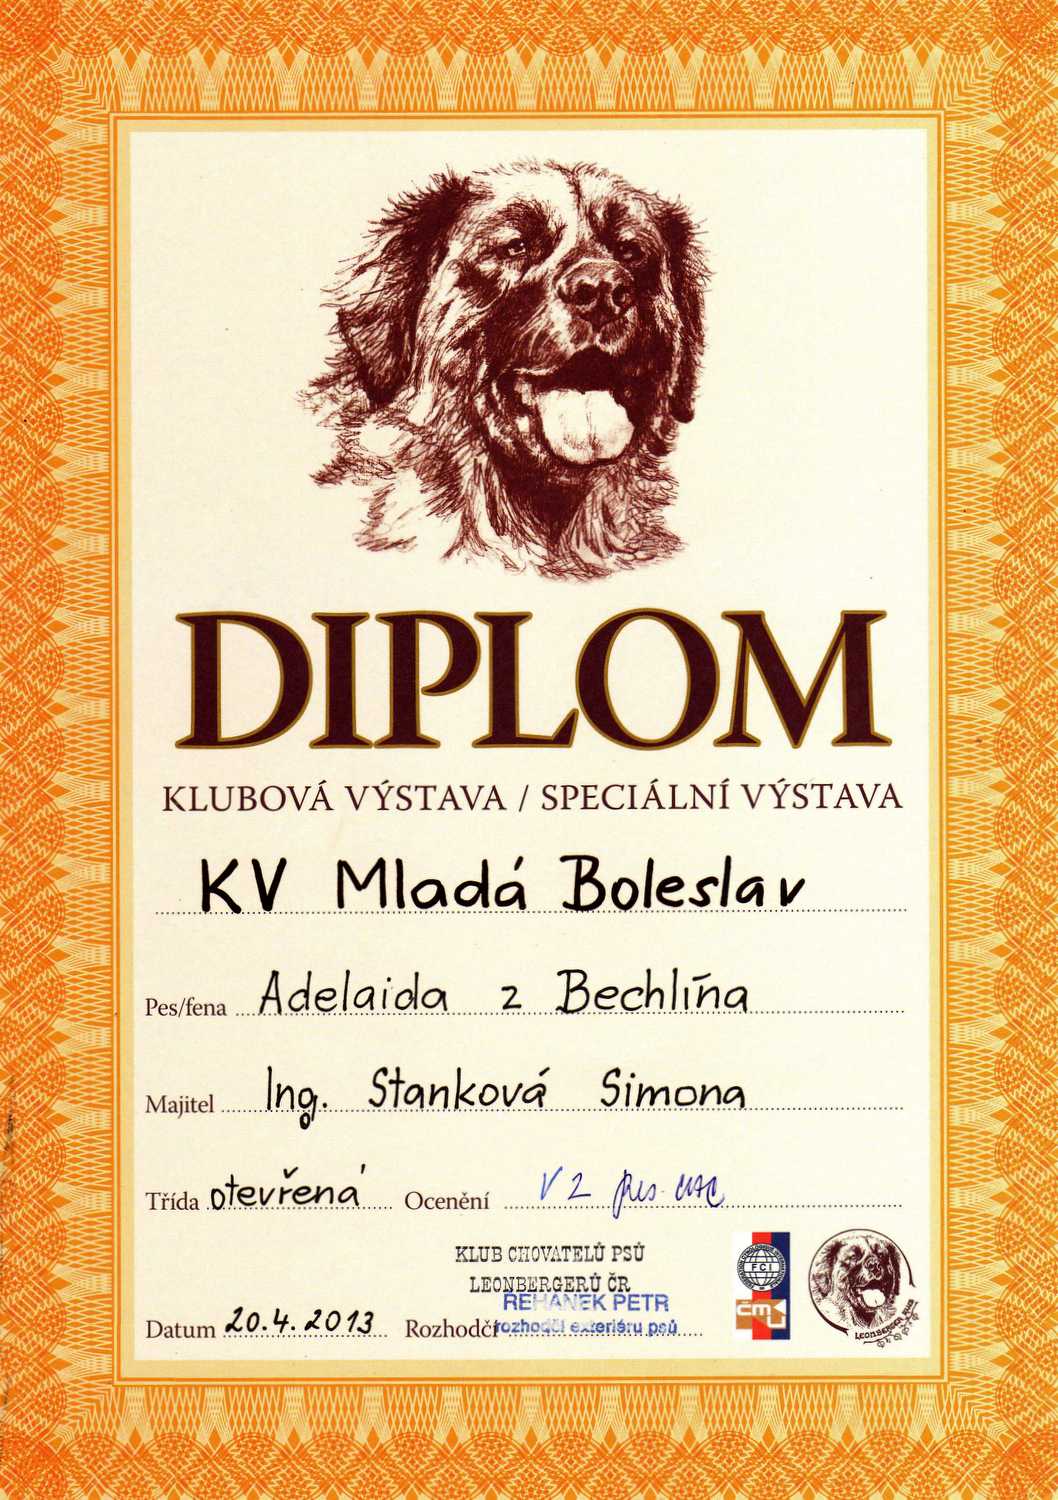 Adelaida KV KCHL 20.4.2013 - diplom